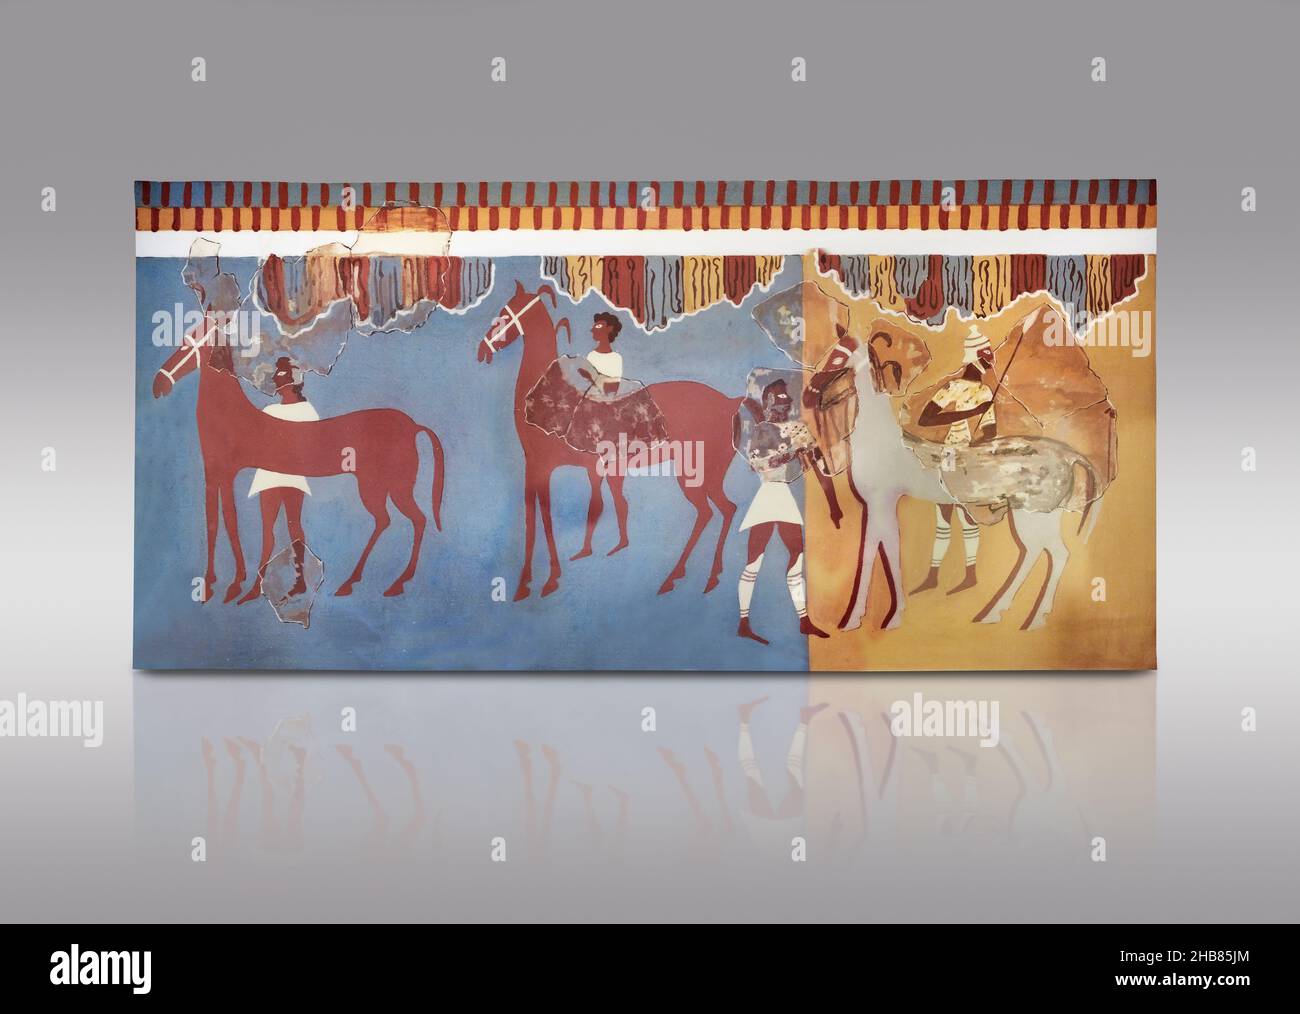 Fresque murale mycénienne d'un guerrier, chevaux et grroms, 1500-1400 av. J.-C., du Palais de Mycènes, zone de Pitos.Mycènes.Site archéologique de Mycenae Mu Banque D'Images